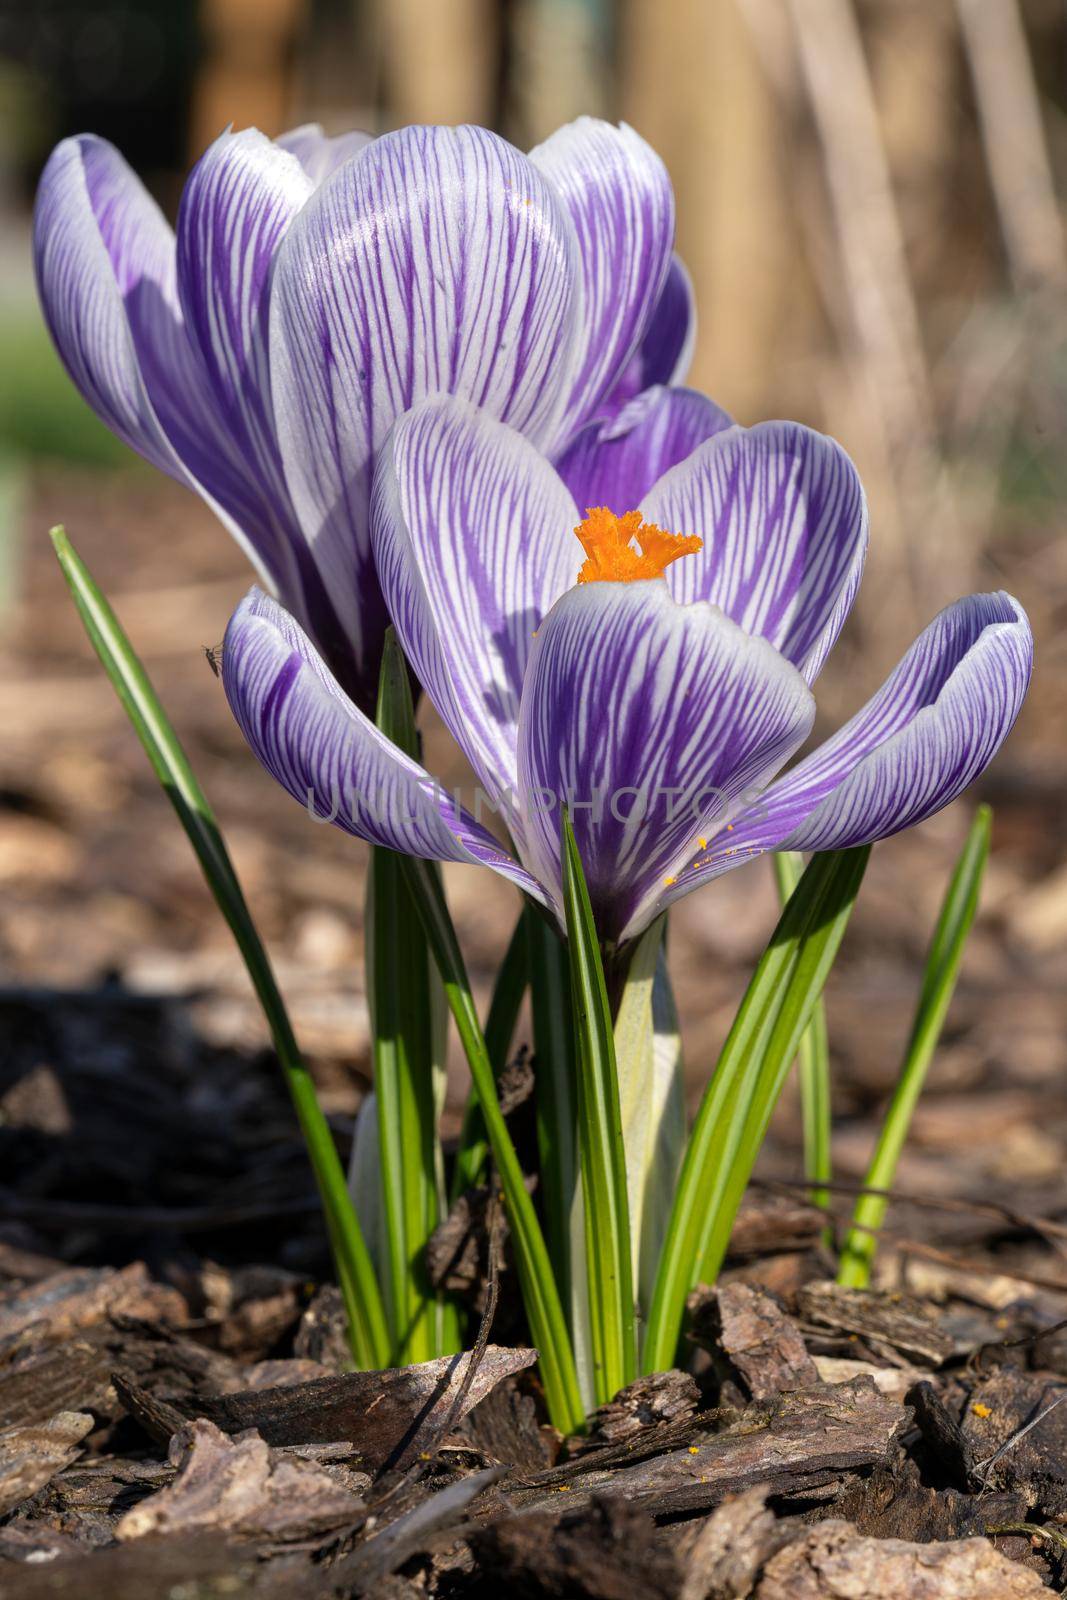 Crocus, flowers of the spring by alfotokunst